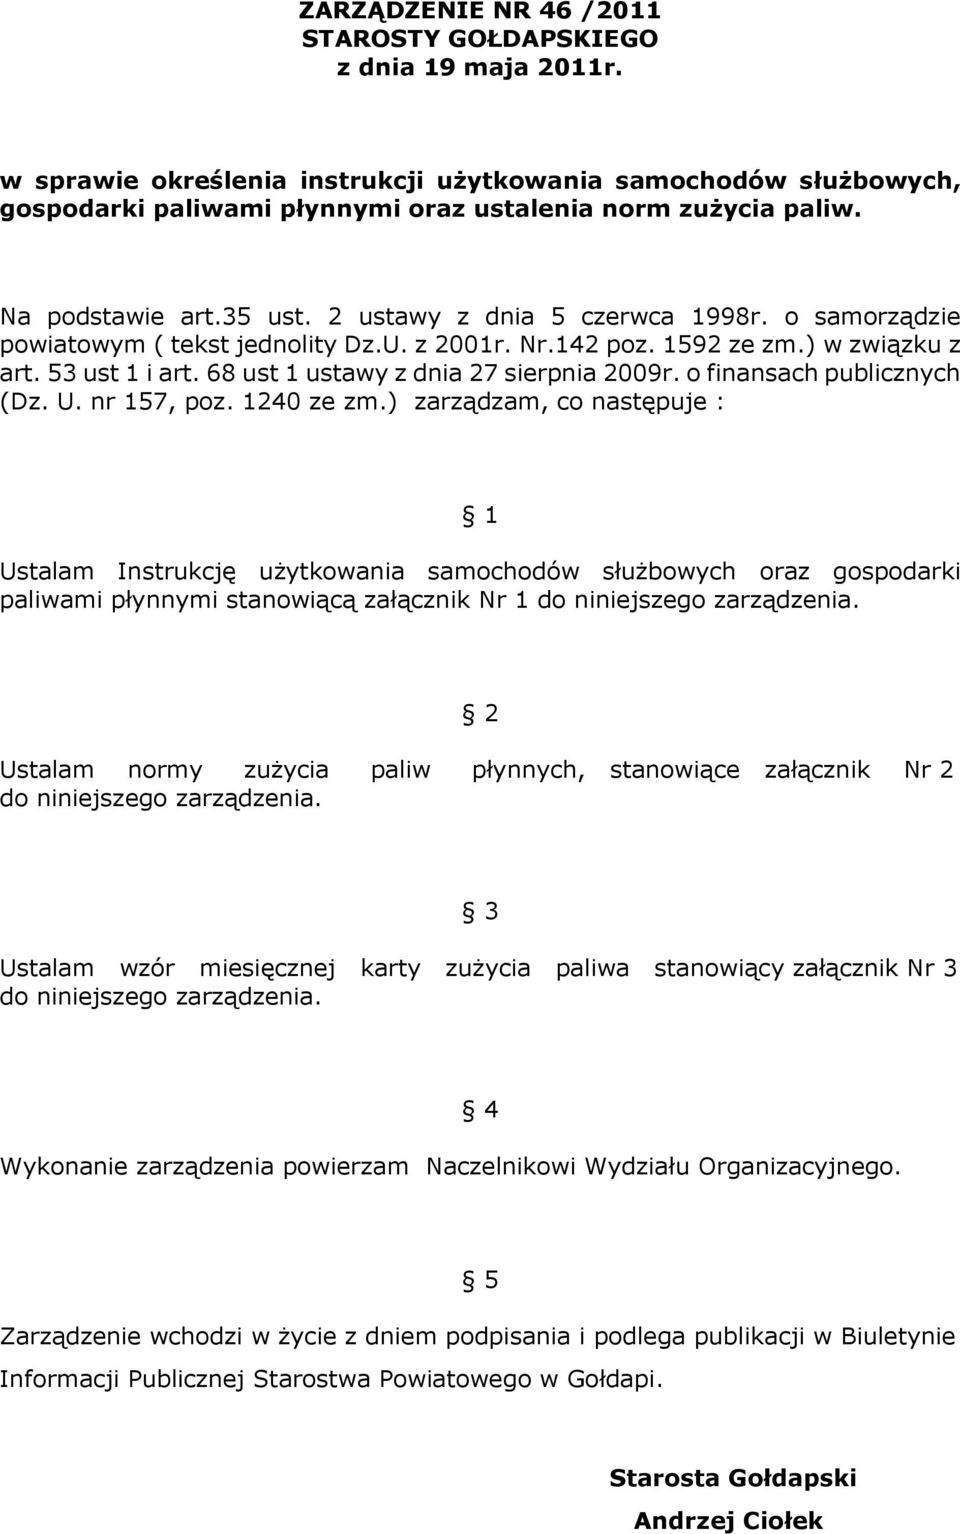 68 ust 1 ustawy z dnia 27 sierpnia 2009r. o finansach publicznych (Dz. U. nr 157, poz. 1240 ze zm.